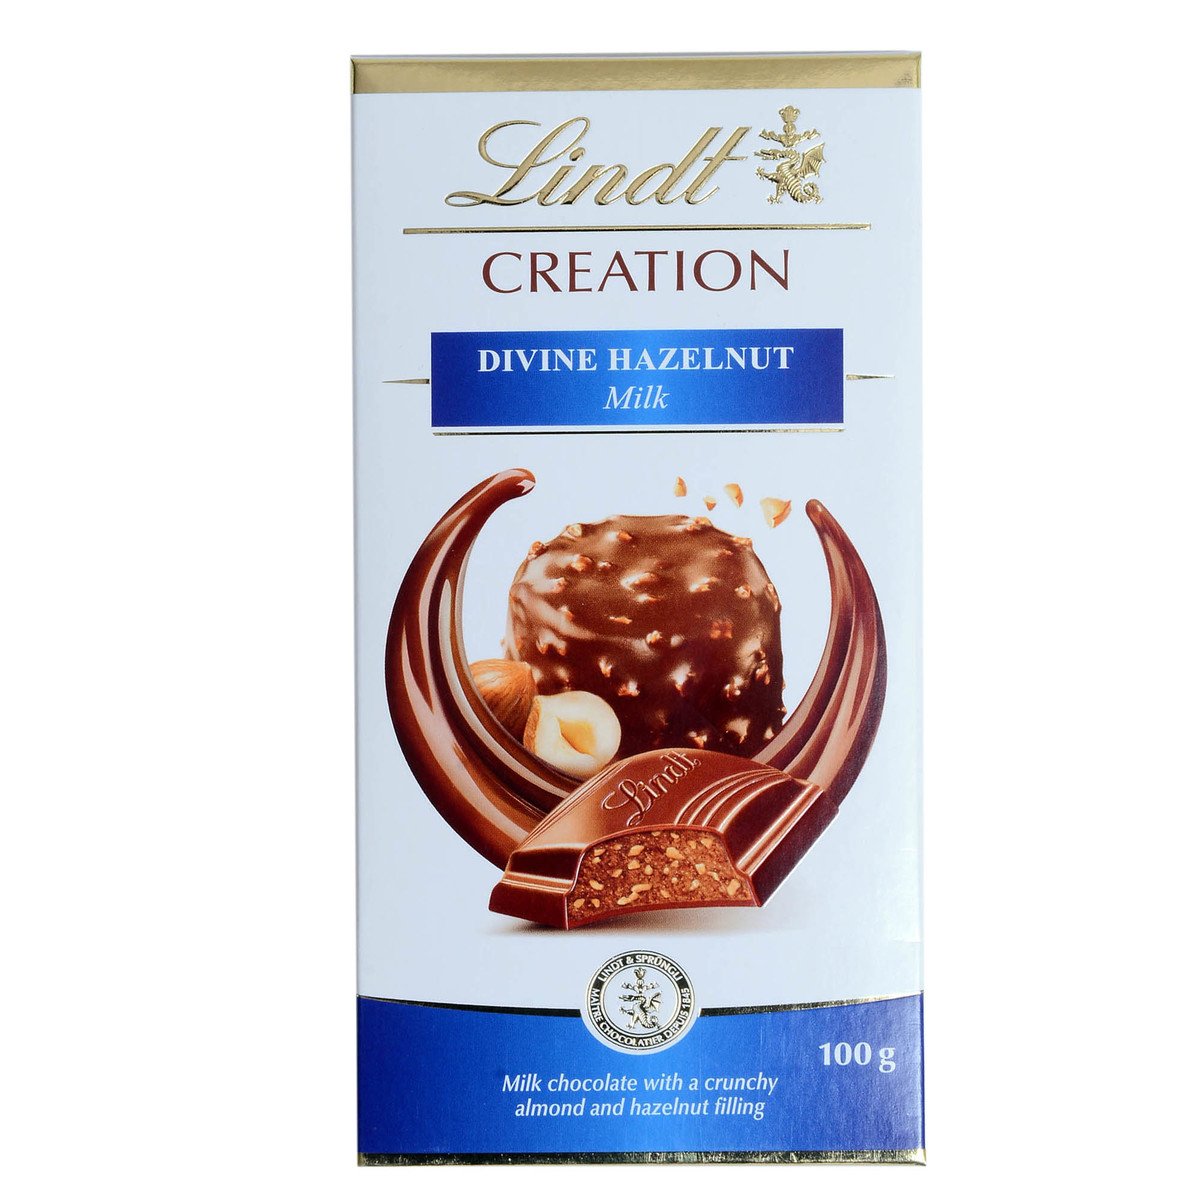 Lindt Creation Divine Hazelnut Milk Chocolate 100g